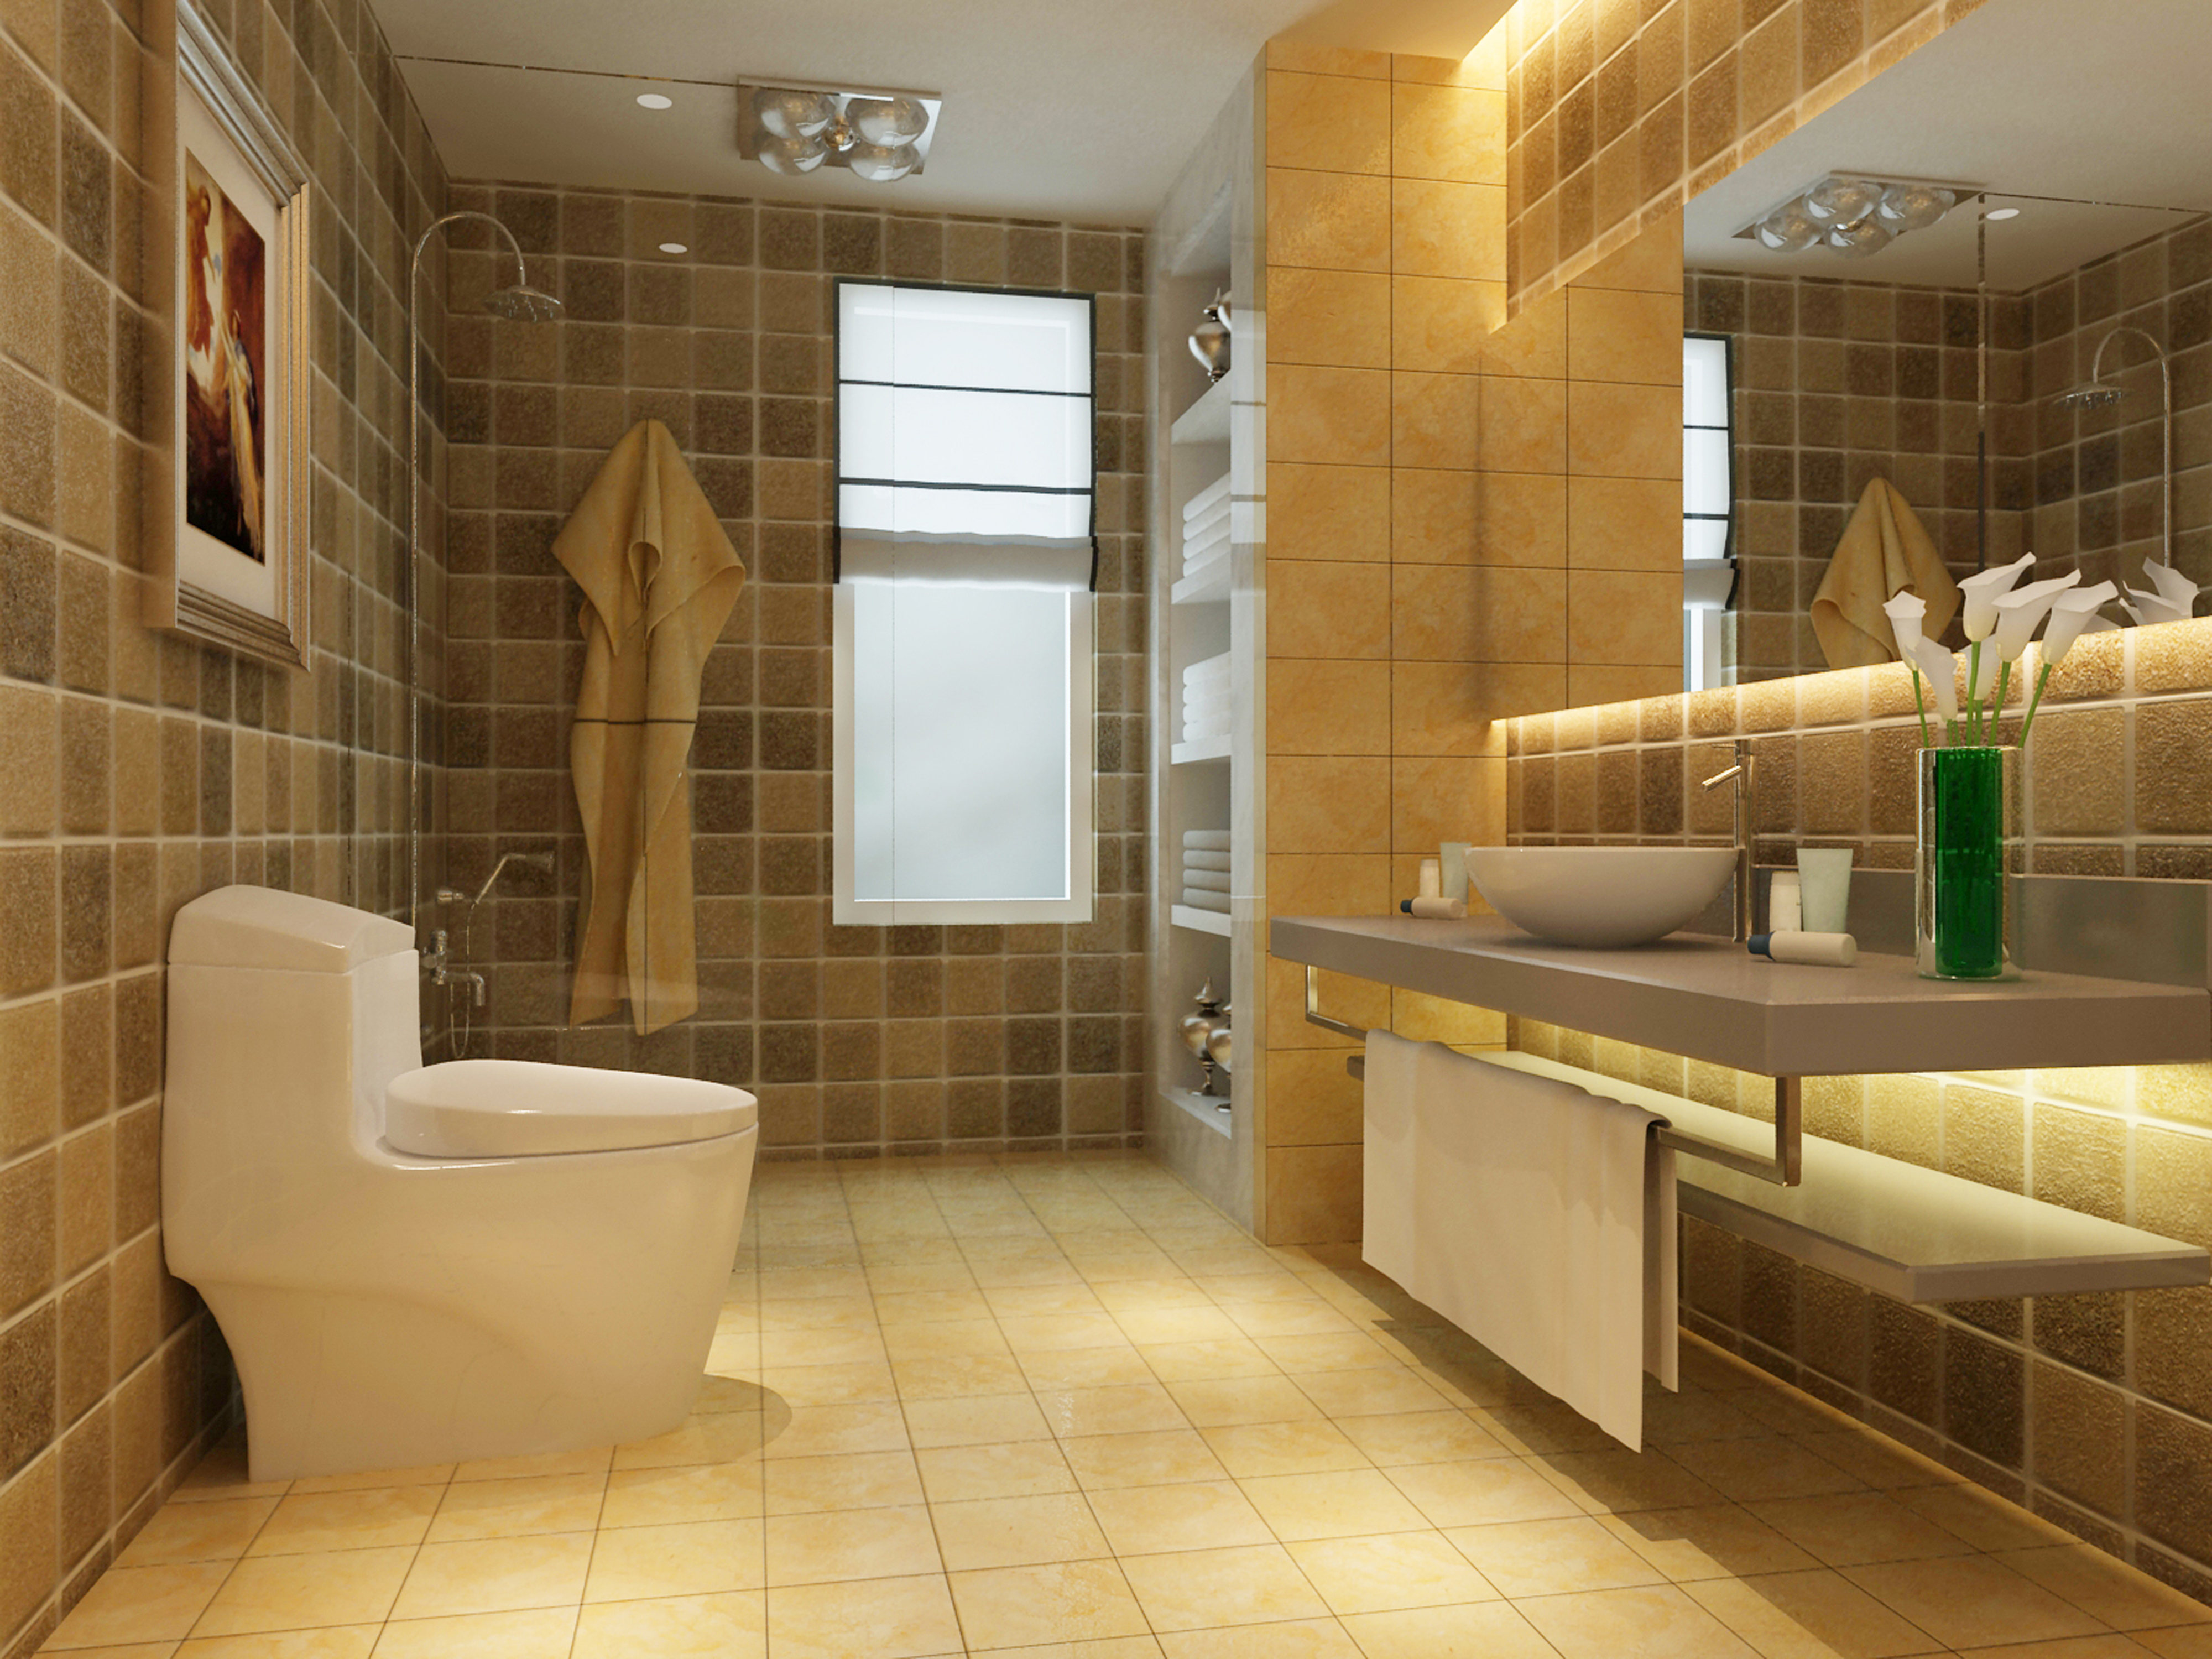 帝王卫浴是几线品牌 帝王卫浴的材质